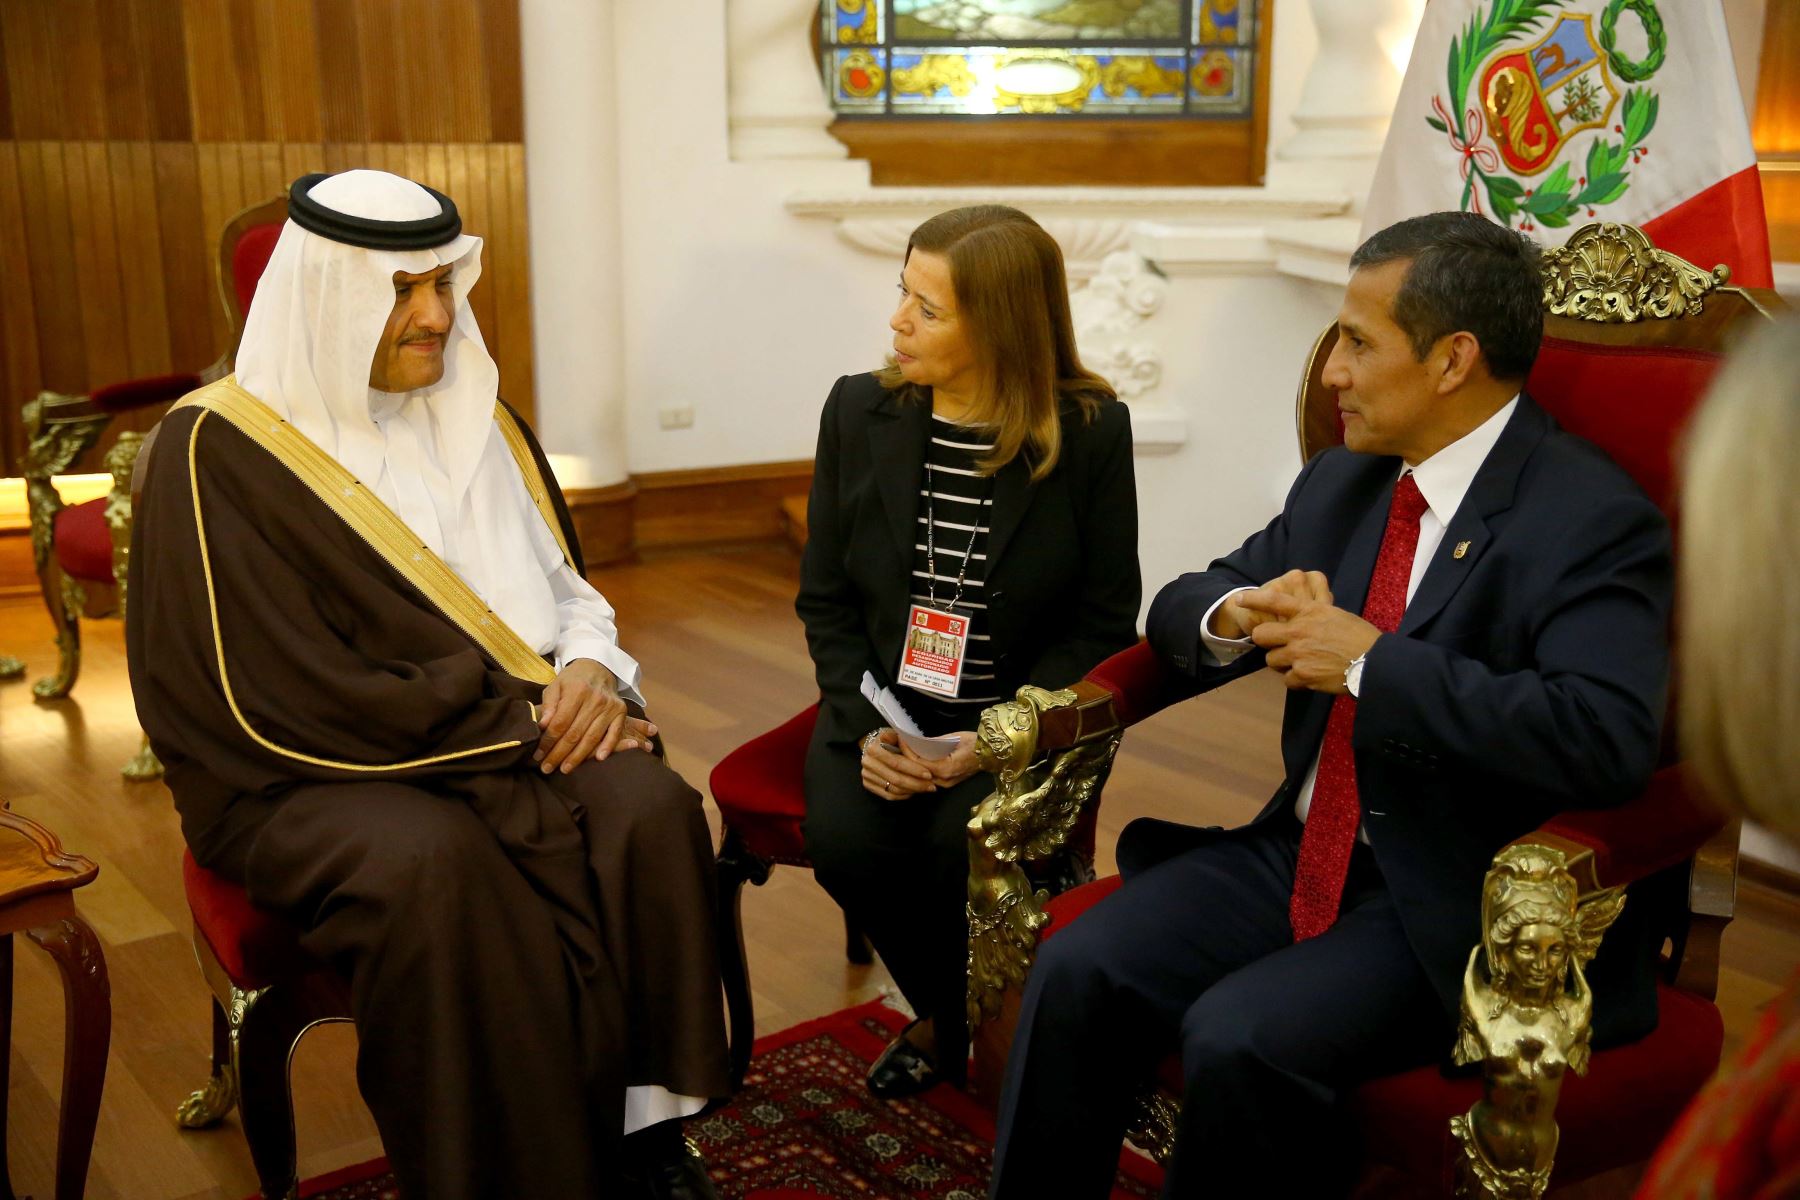 Presidente Ollanta Humala recibió en audiencia al príncipe del Reino de Arabia Saudita Bin Salmán Bin Abudalaziz Al Saud, en Palacio de Gobierno.Foto: ANDINA/Prensa Presidencia